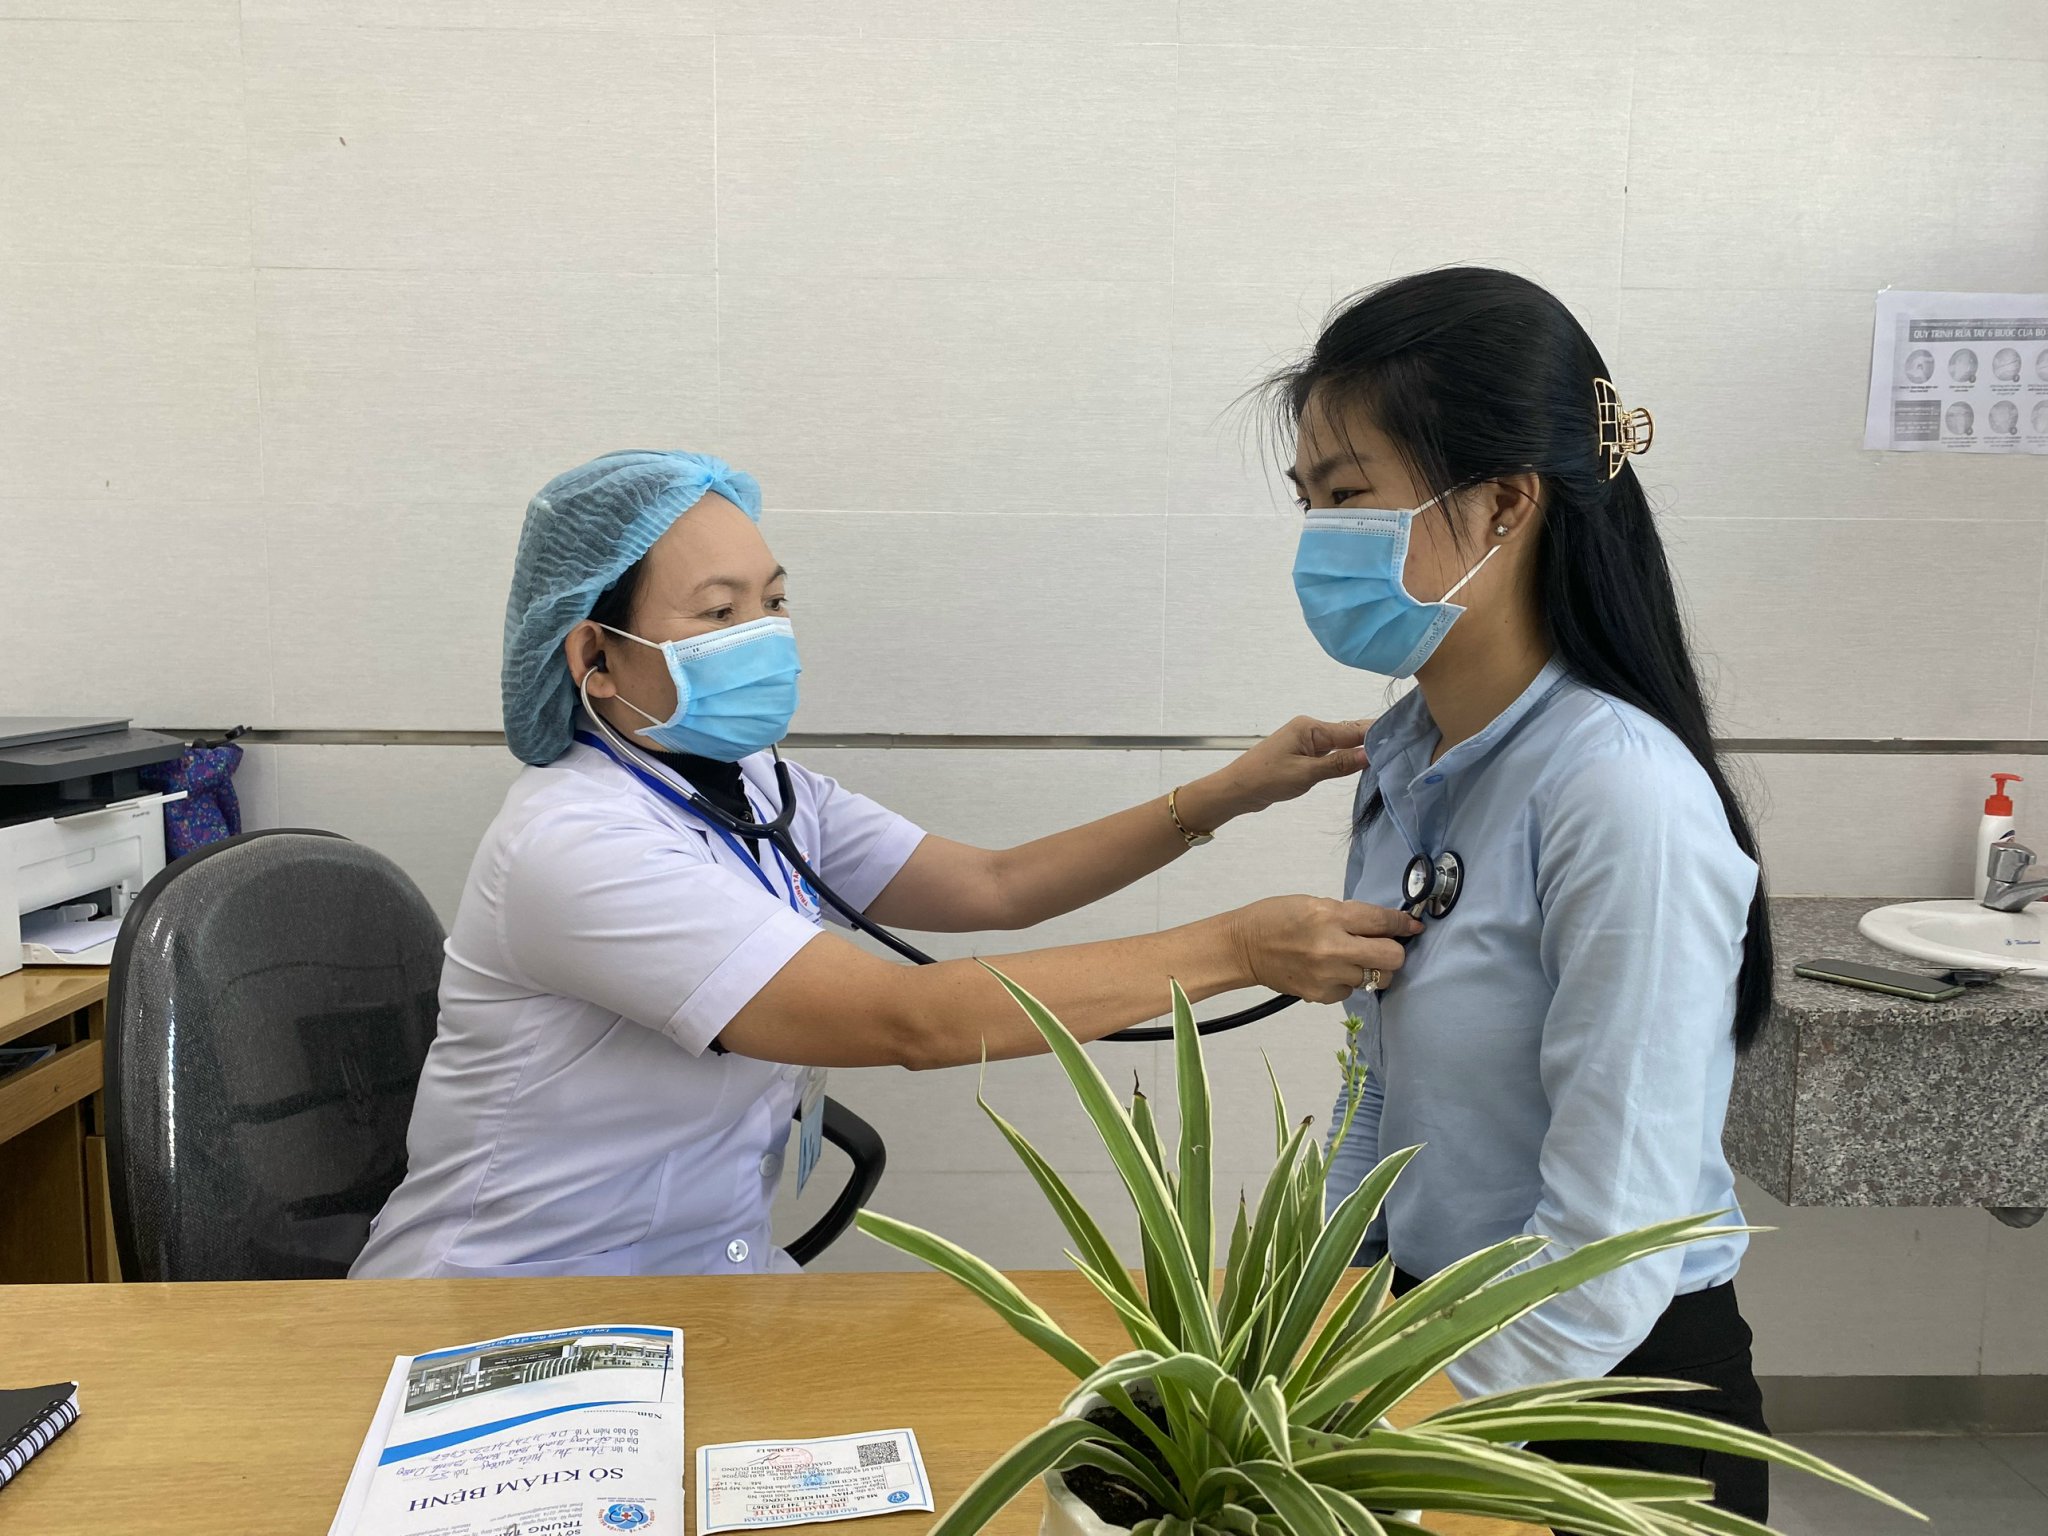 Bác sỹ, nhân viên tế Trung tâm Y tế huyện Bàu Bàng vừa thực hiện nhiệm vụ phòng, chống dịch bệnh vừa bảo đảm thực hiện tốt chăm sóc sức khỏe nhân dân.